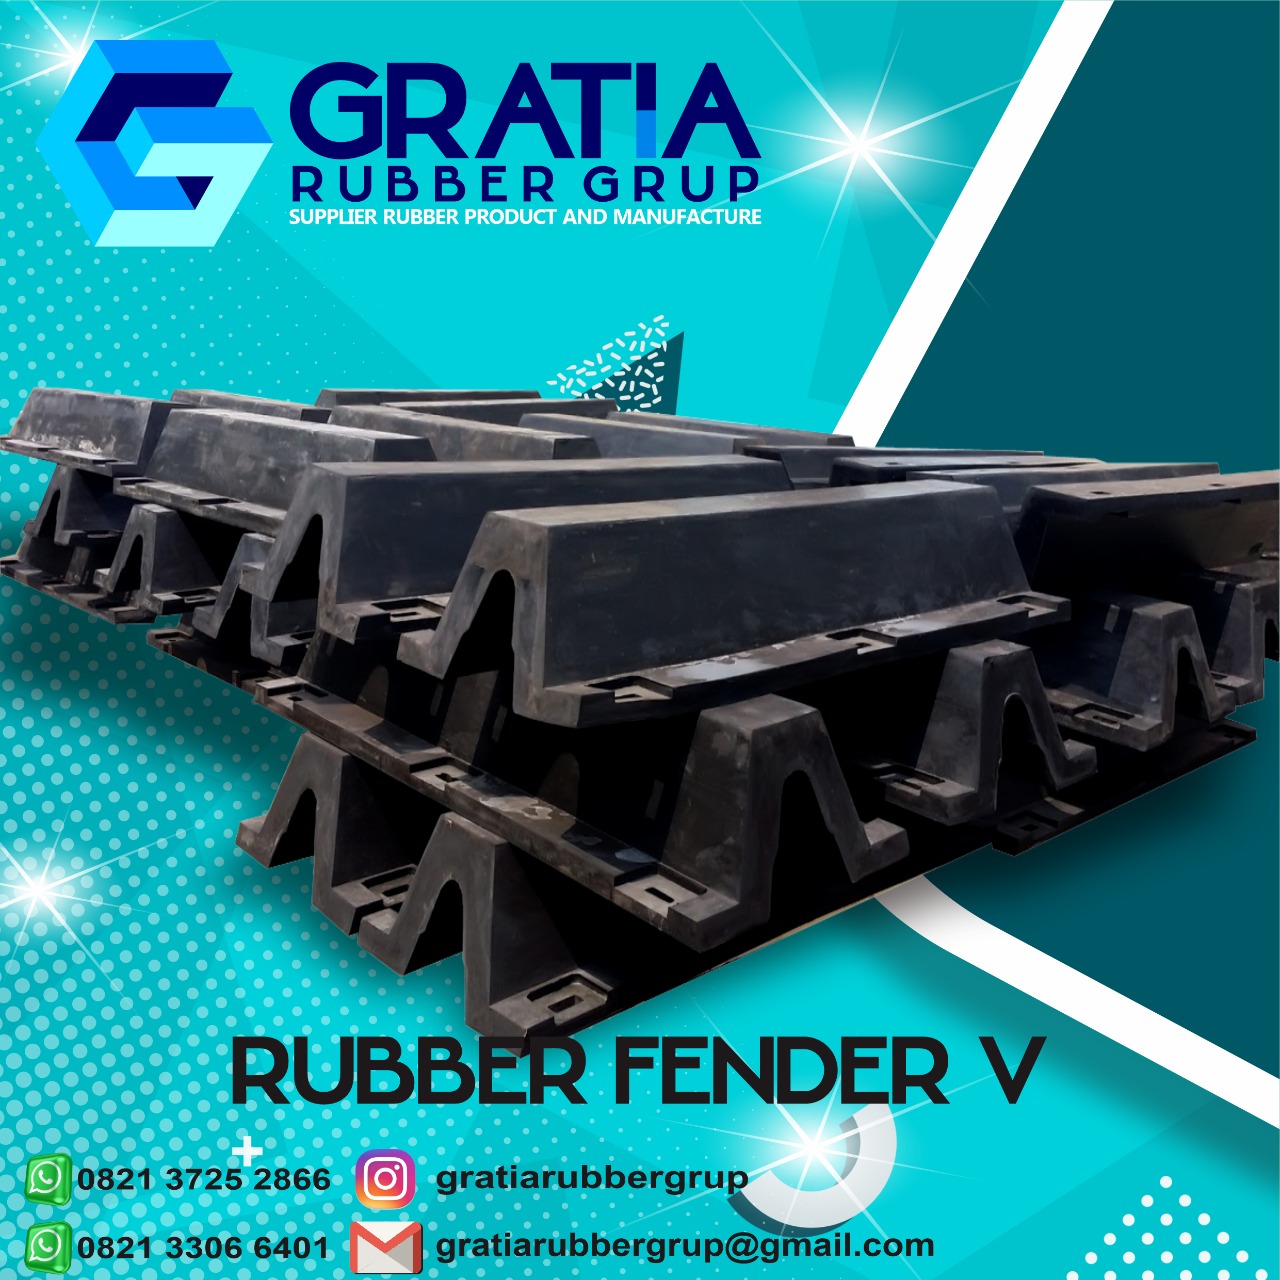 Jual Rubber Fender Murah Dan Berkualitas  Melayani Pengiriman Ke Pariaman Sumatera Barat Hub 0821 3306 0461